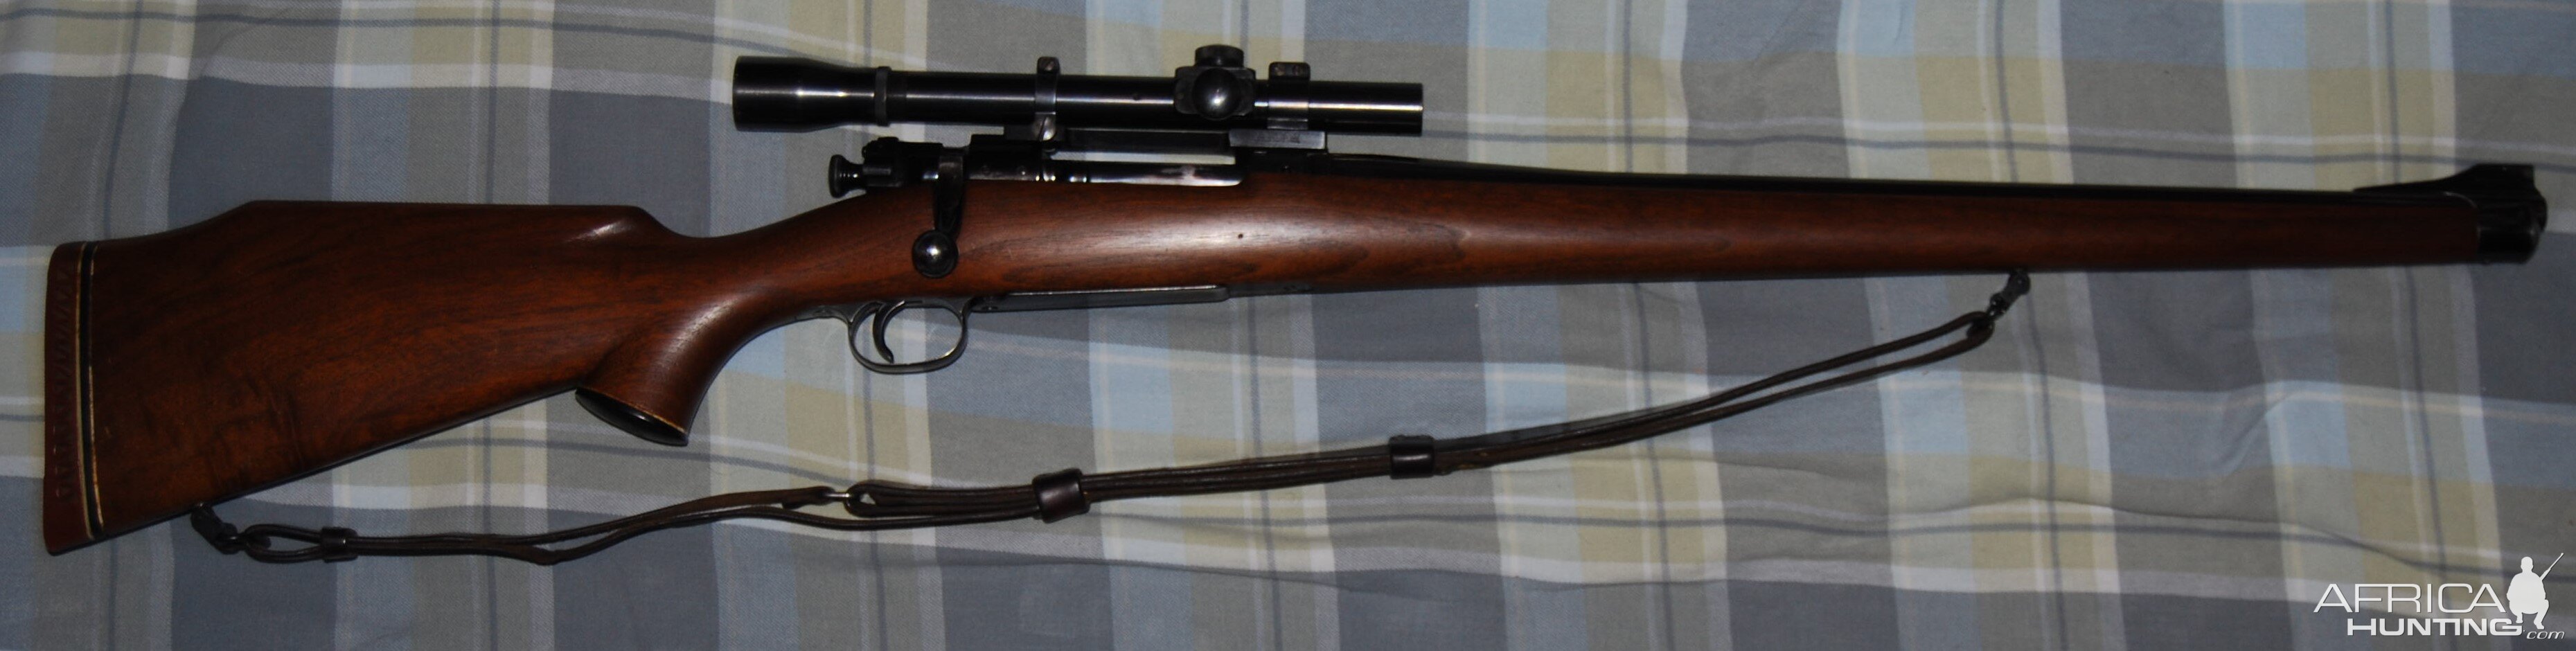 Pre-70, pre-54 Springfield Model 1903 Mark Rifle